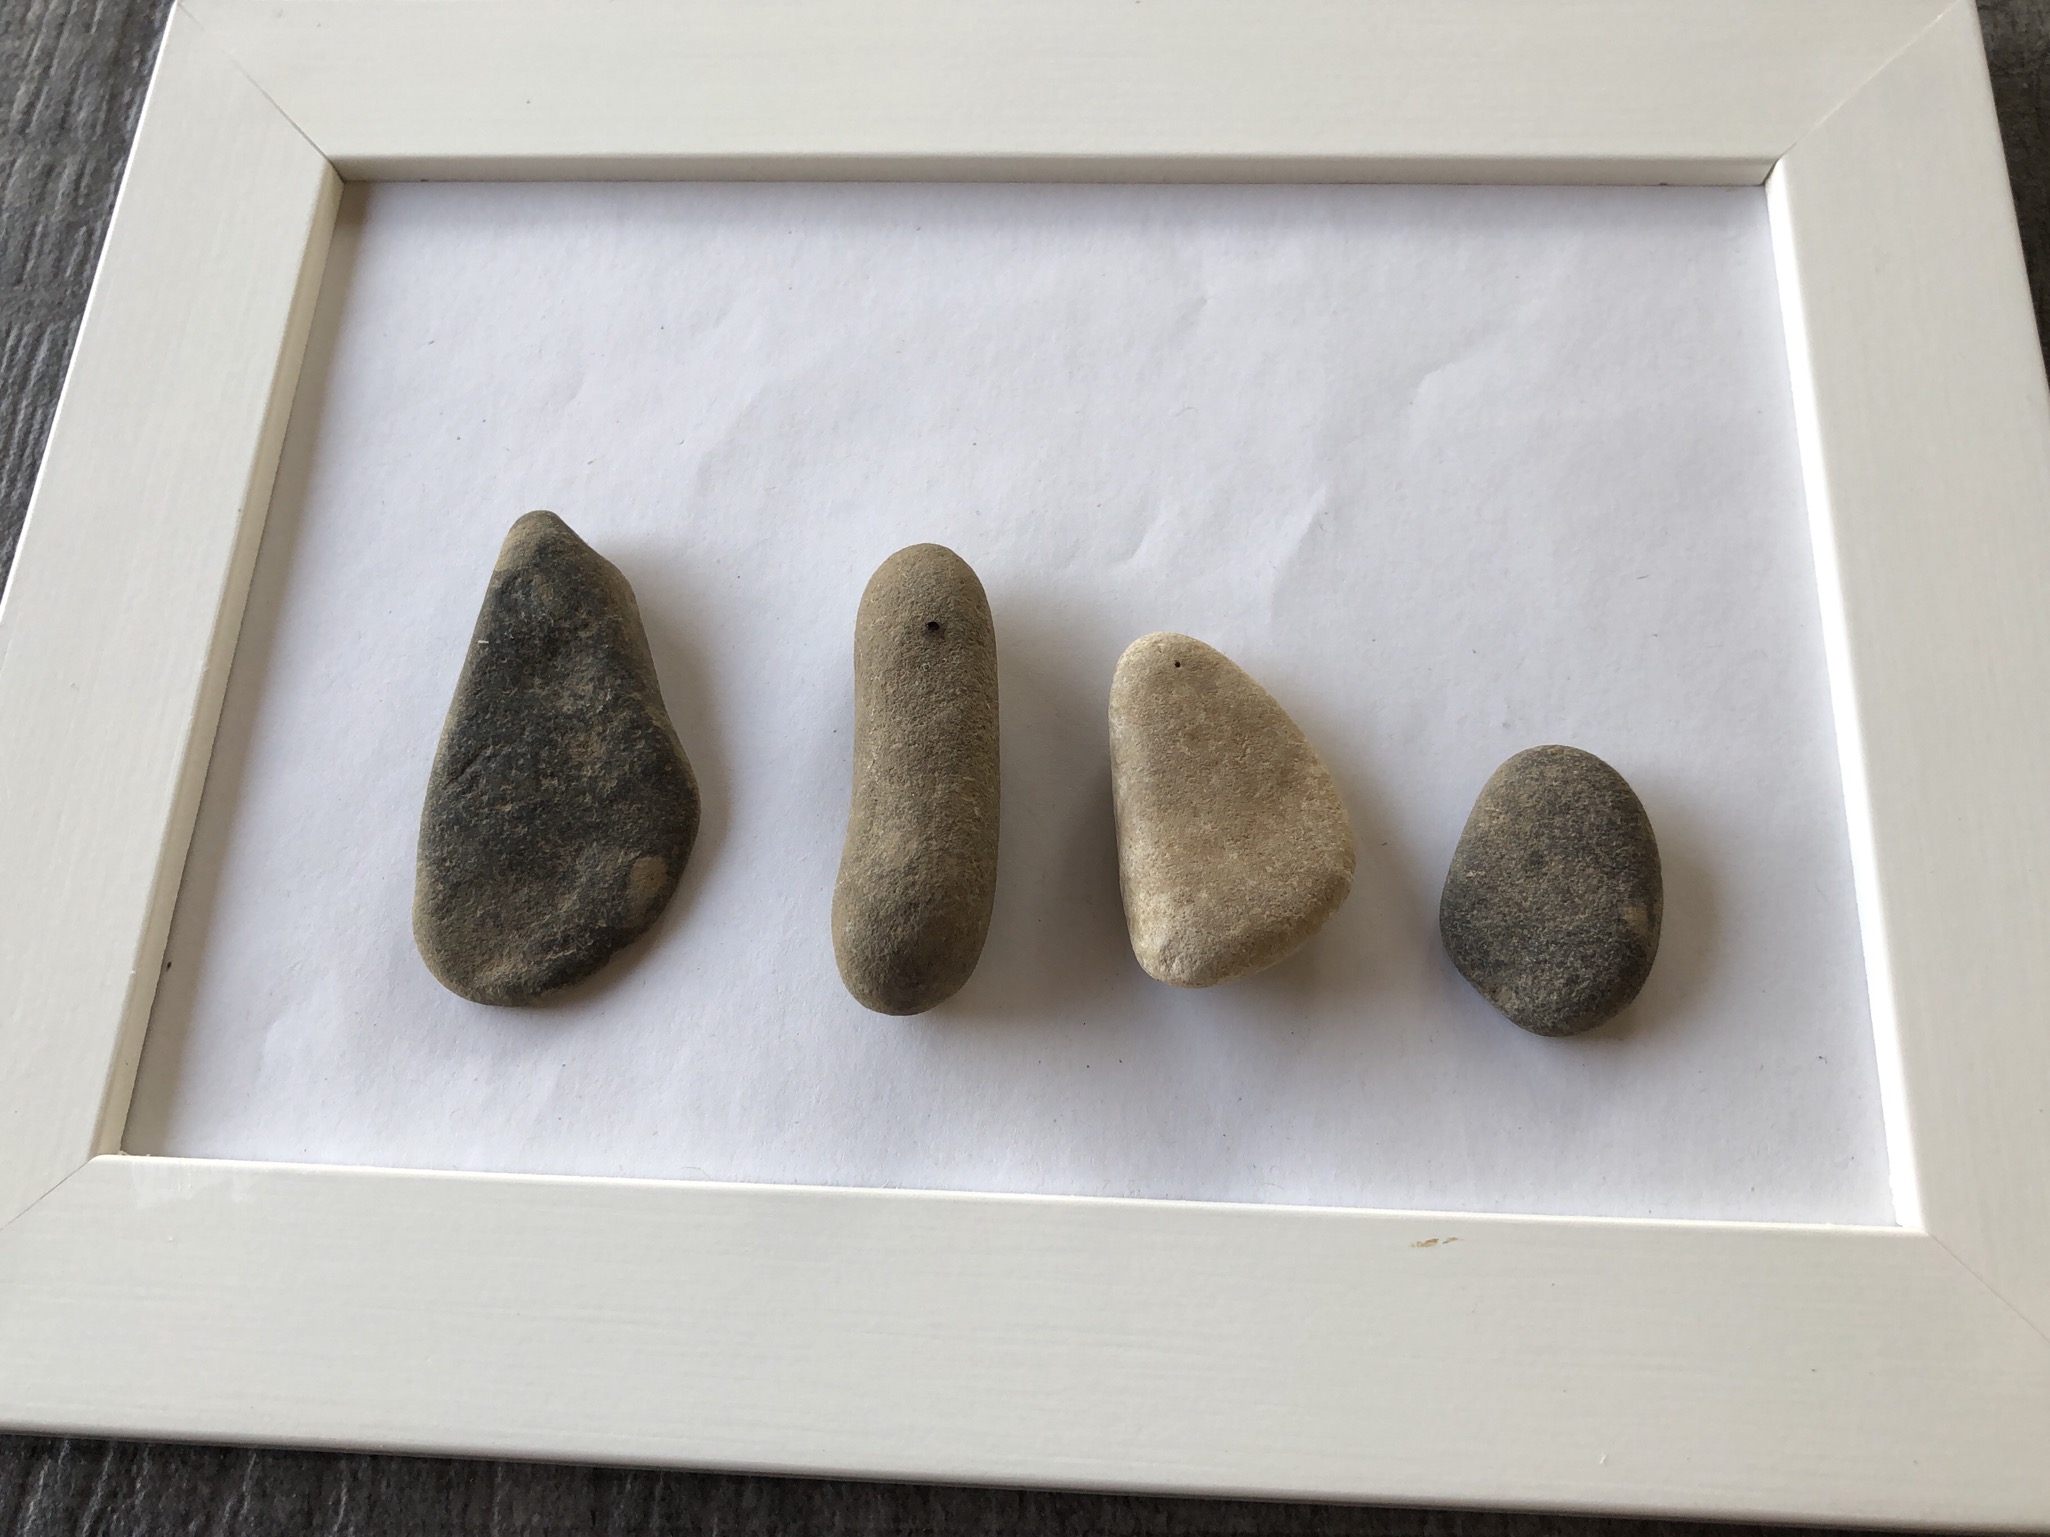 Bild zum Schritt 2 für das Bastel- und DIY-Abenteuer für Kinder: 'Wählt Steine aus, die ihr verwenden wollt. Zum Beispiel für...'